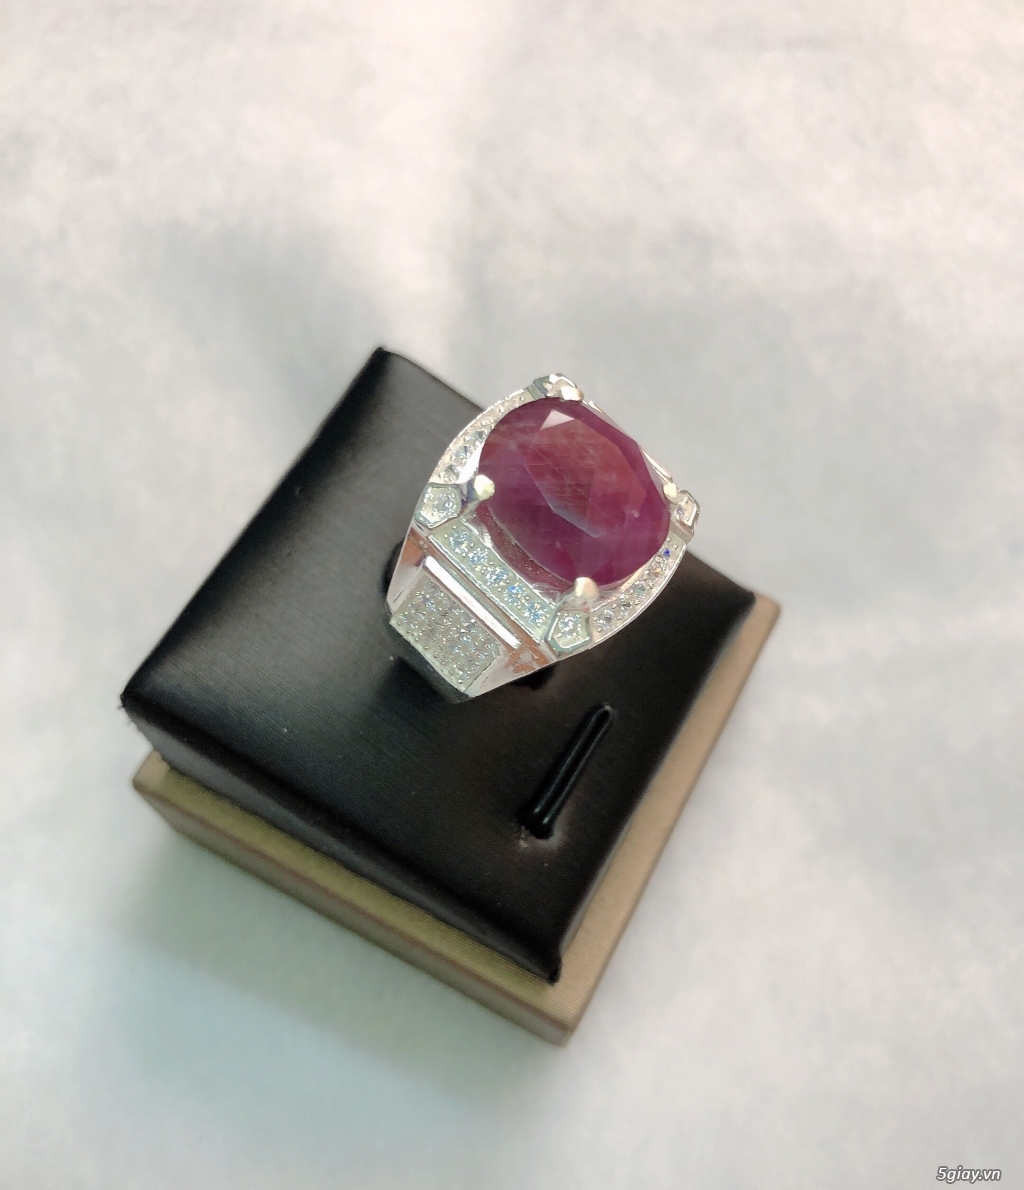 Nhẫn bạc cao cấp 950 gắn đá Ruby Saphia thiên nhiên 100% độc đẹp khủng - 11